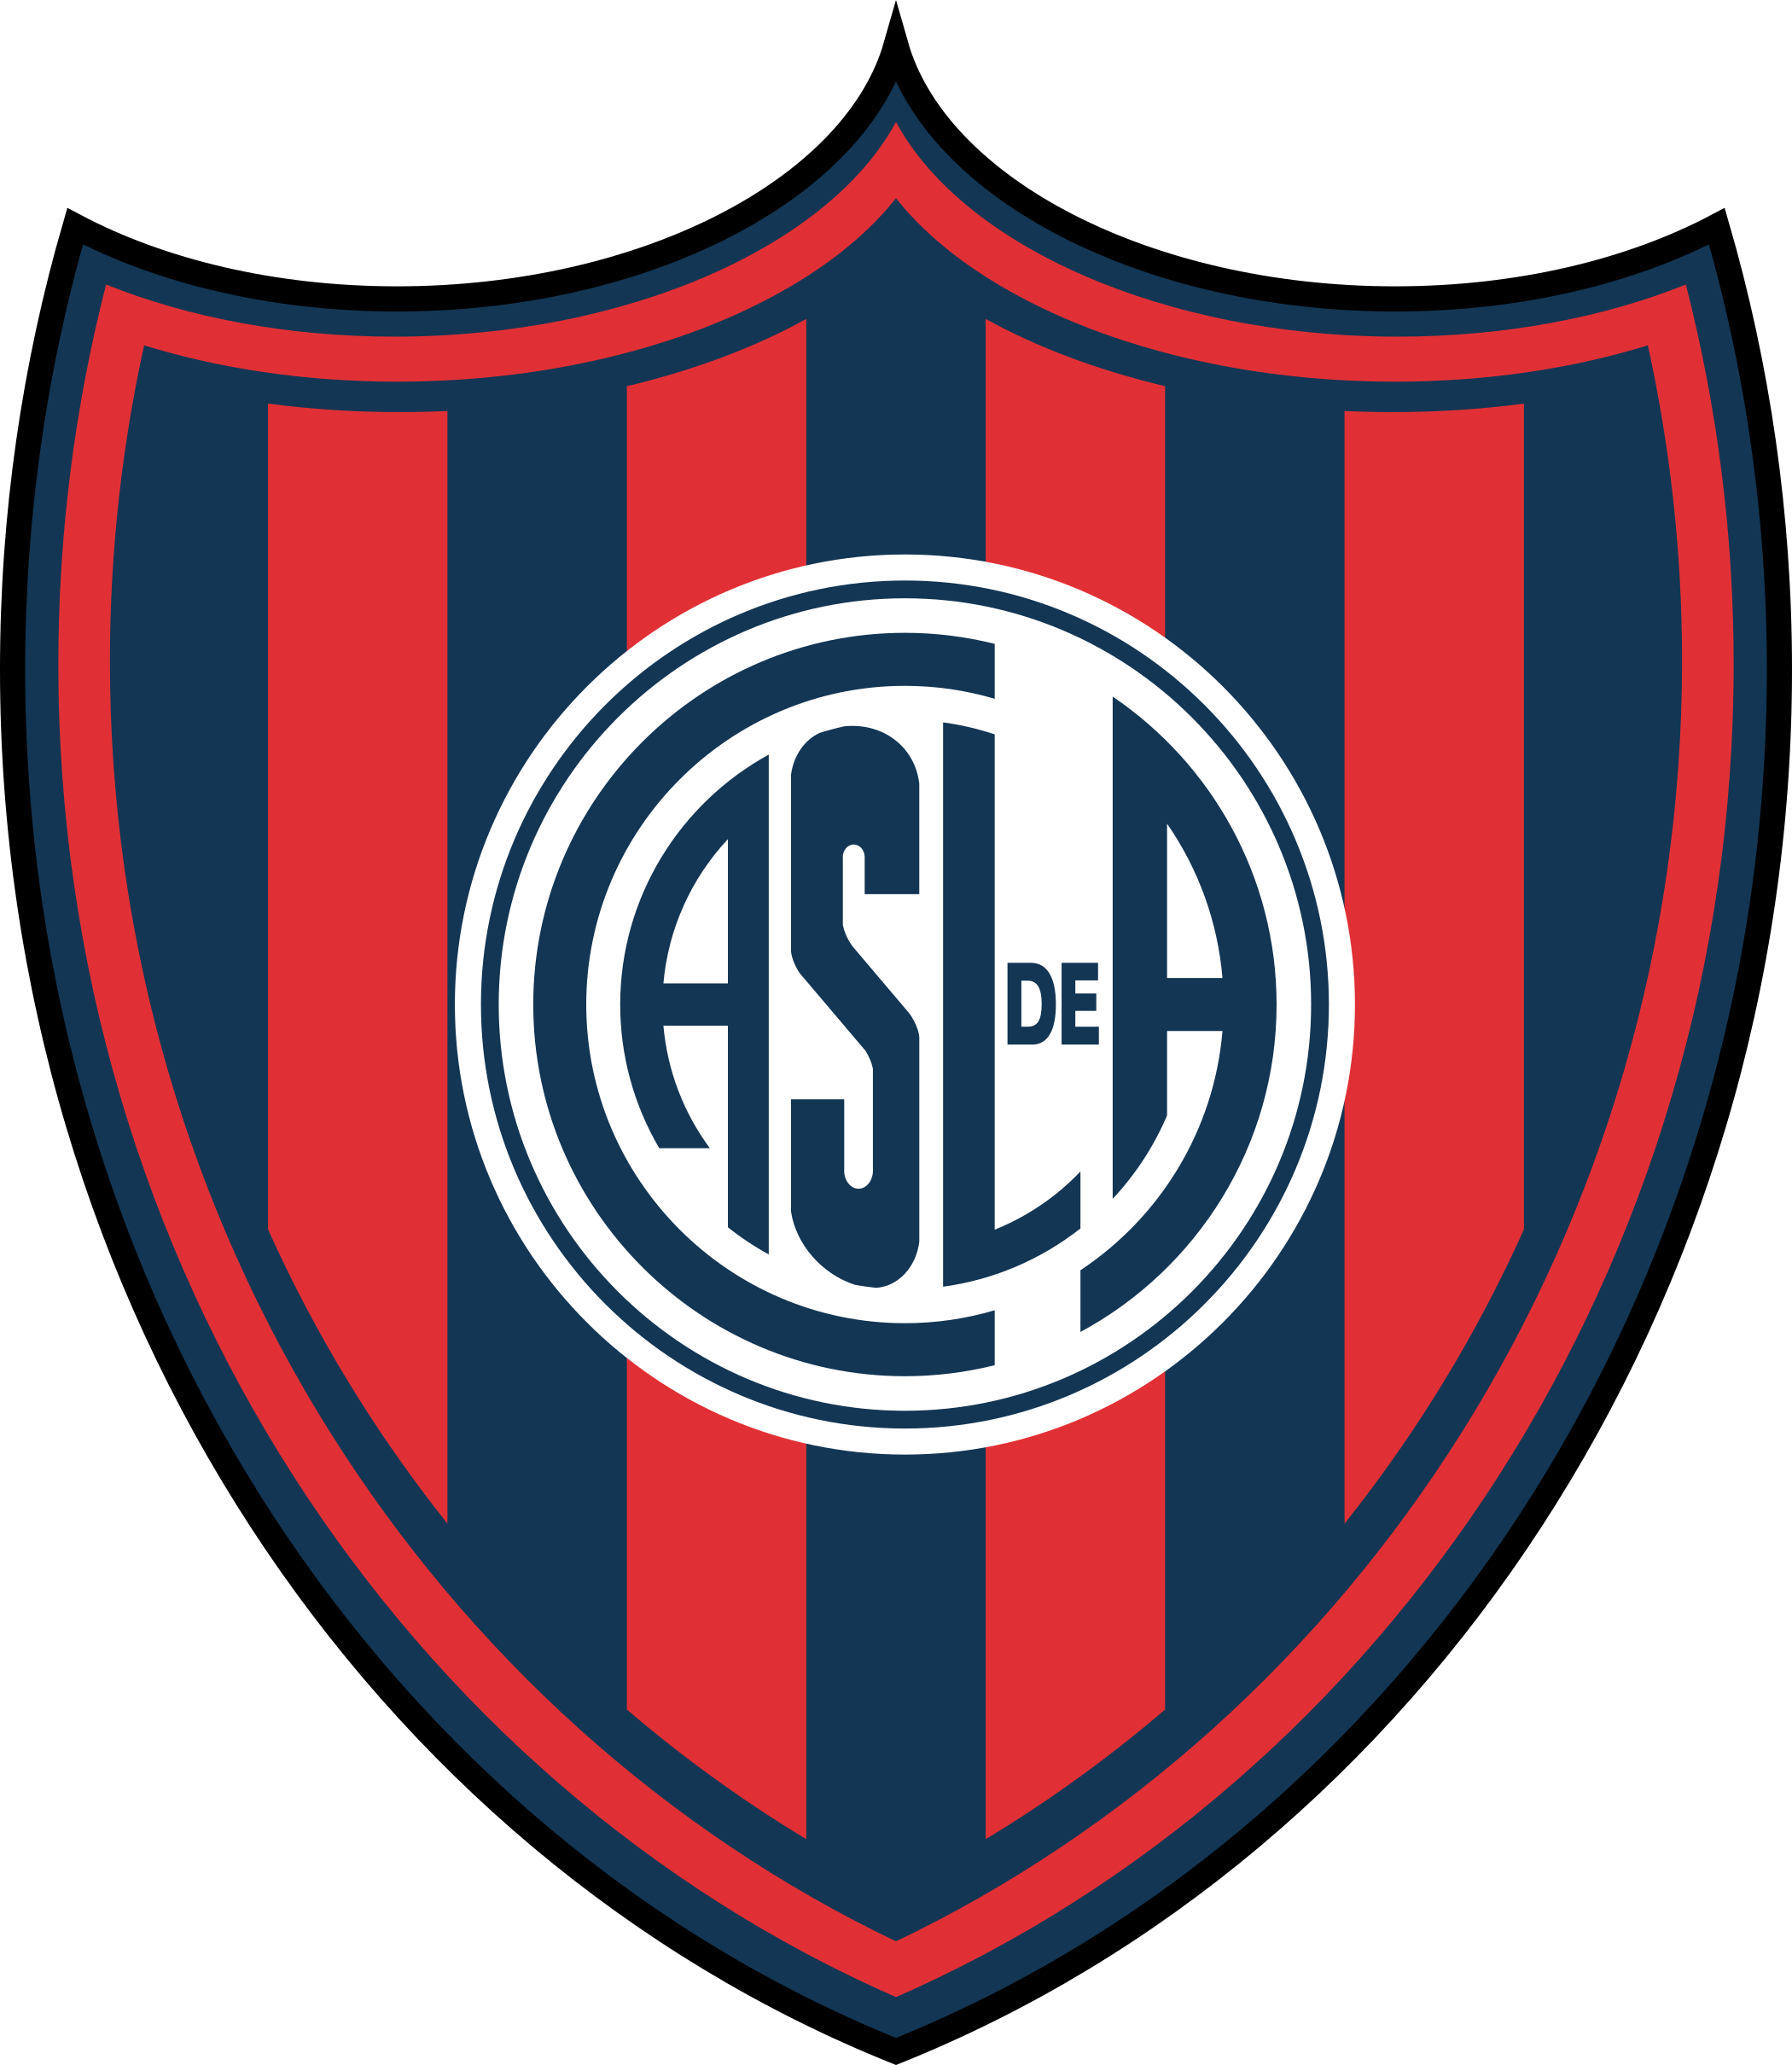 san lorenzo logo escudo 1 - San Lorenzo Logo - Club Atlético San Lorenzo de Almagro Escudo